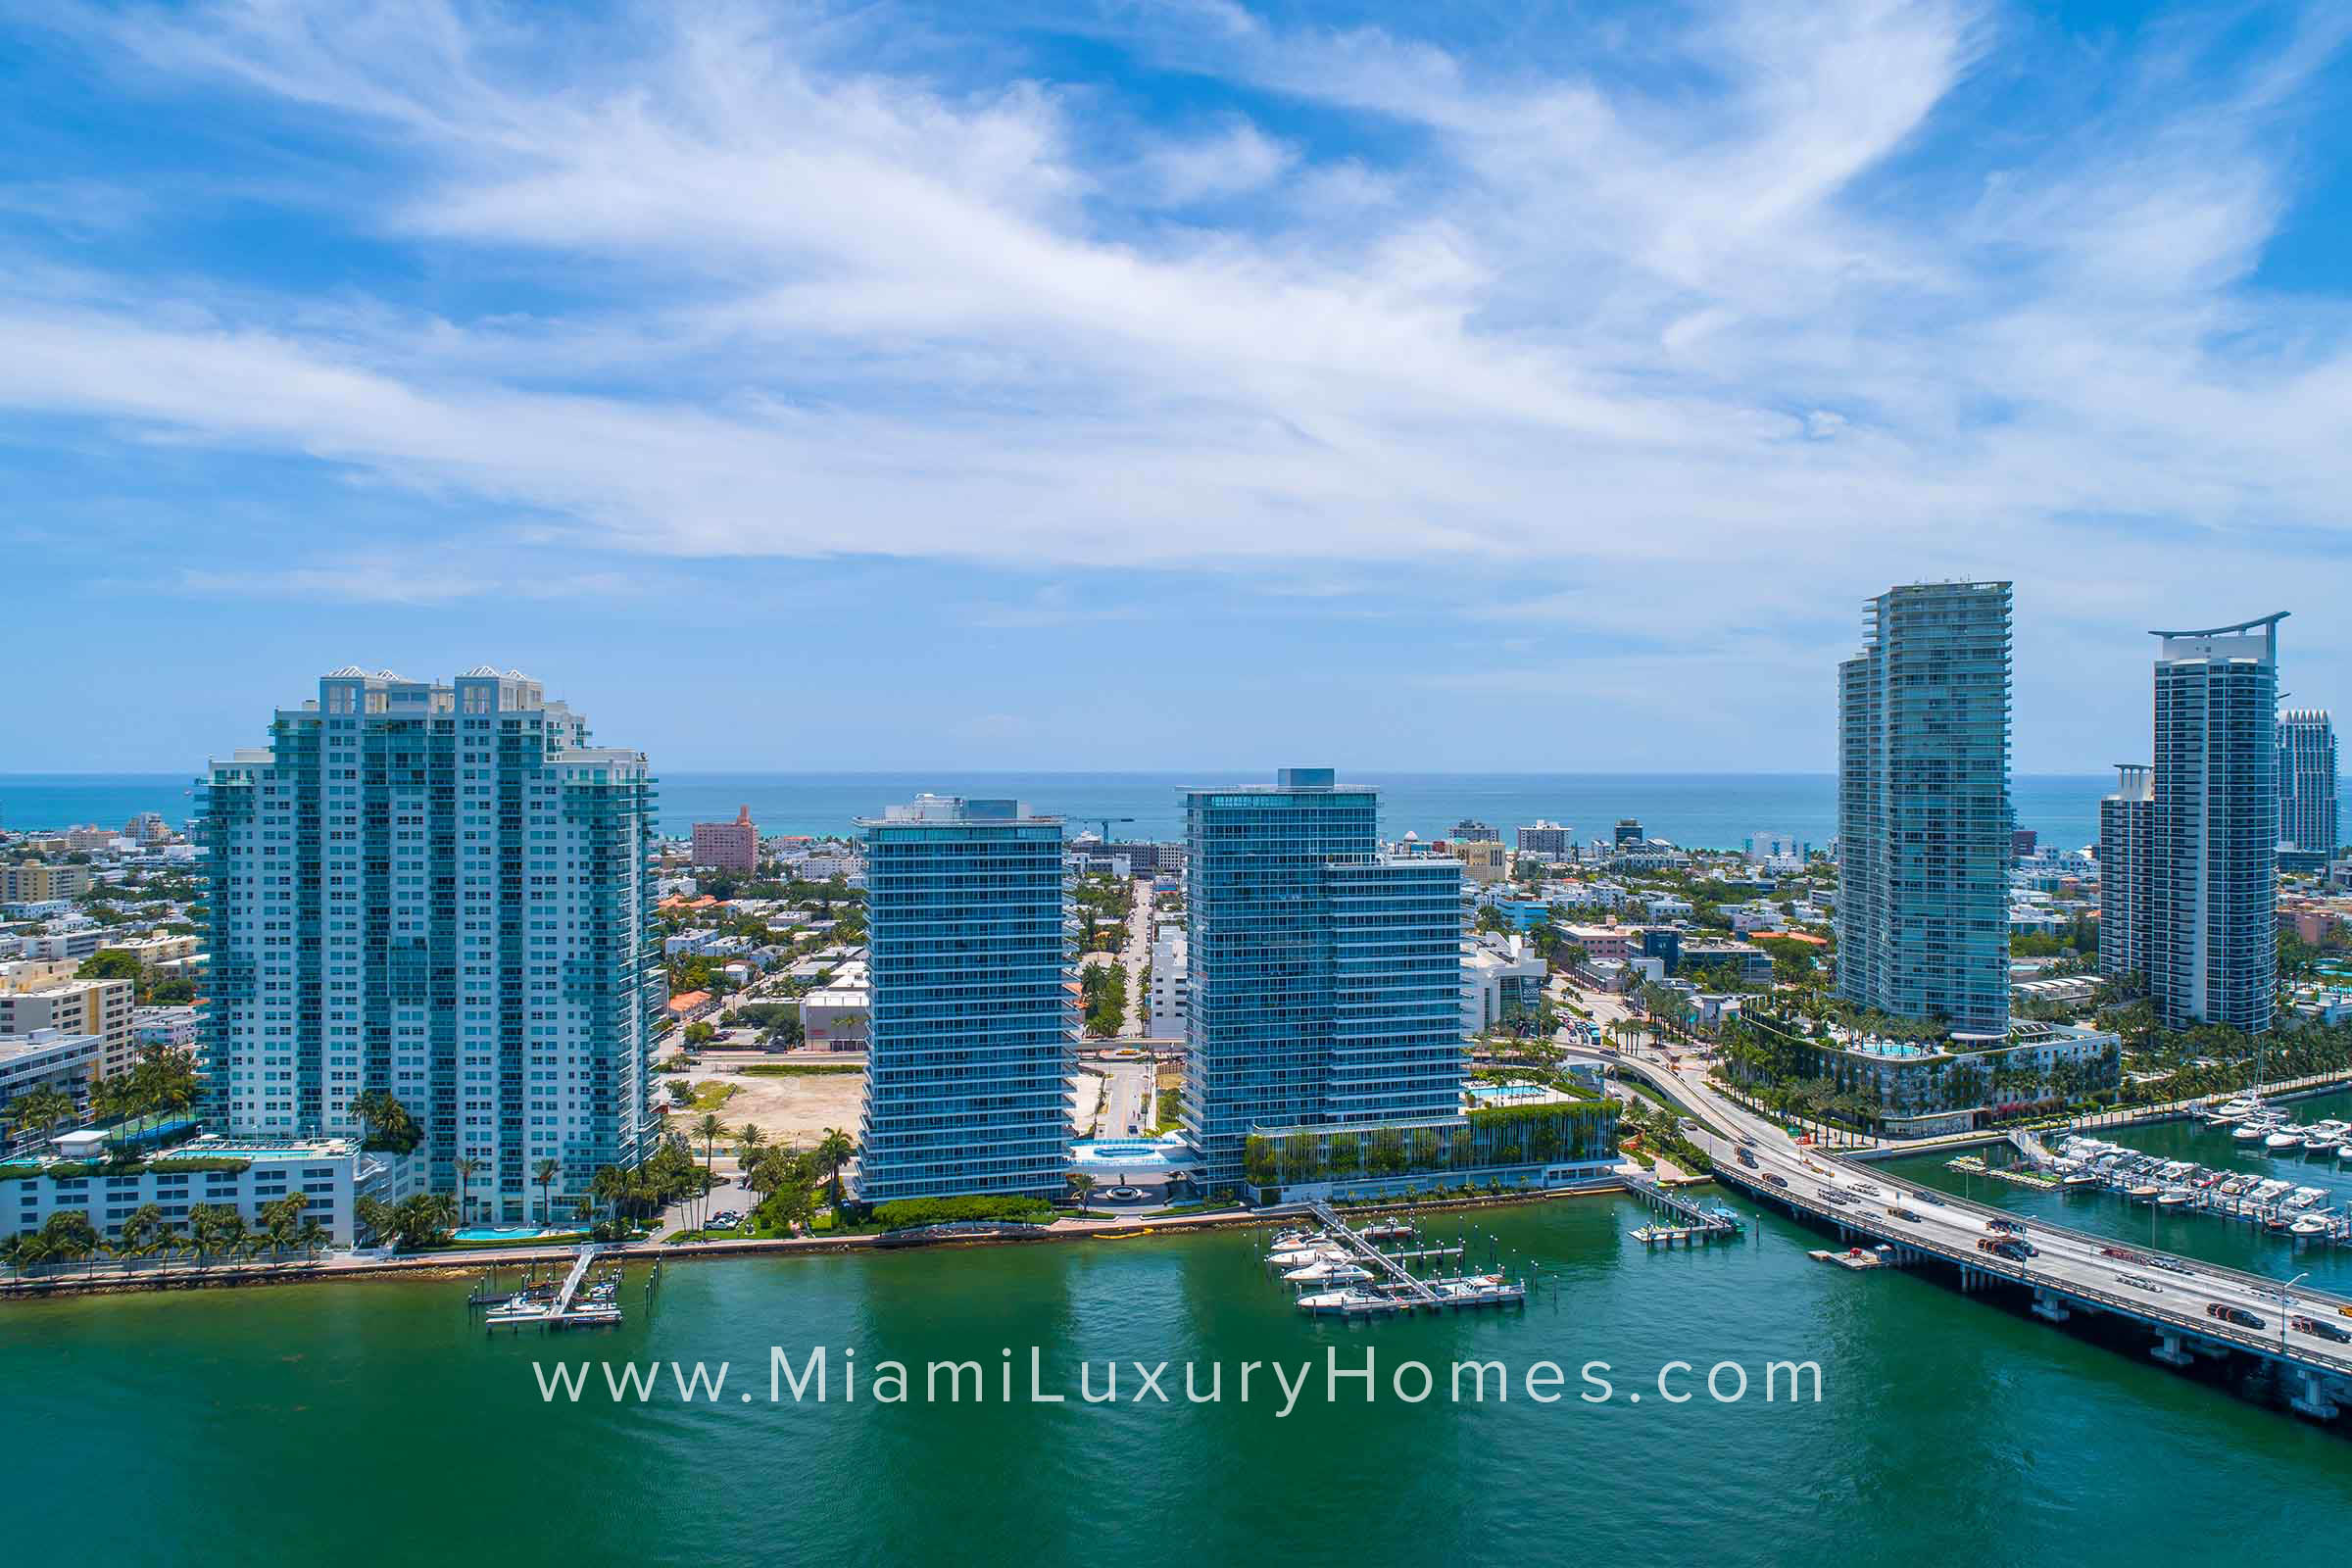 Bentley Bay Condo Buildings in Miami Beach